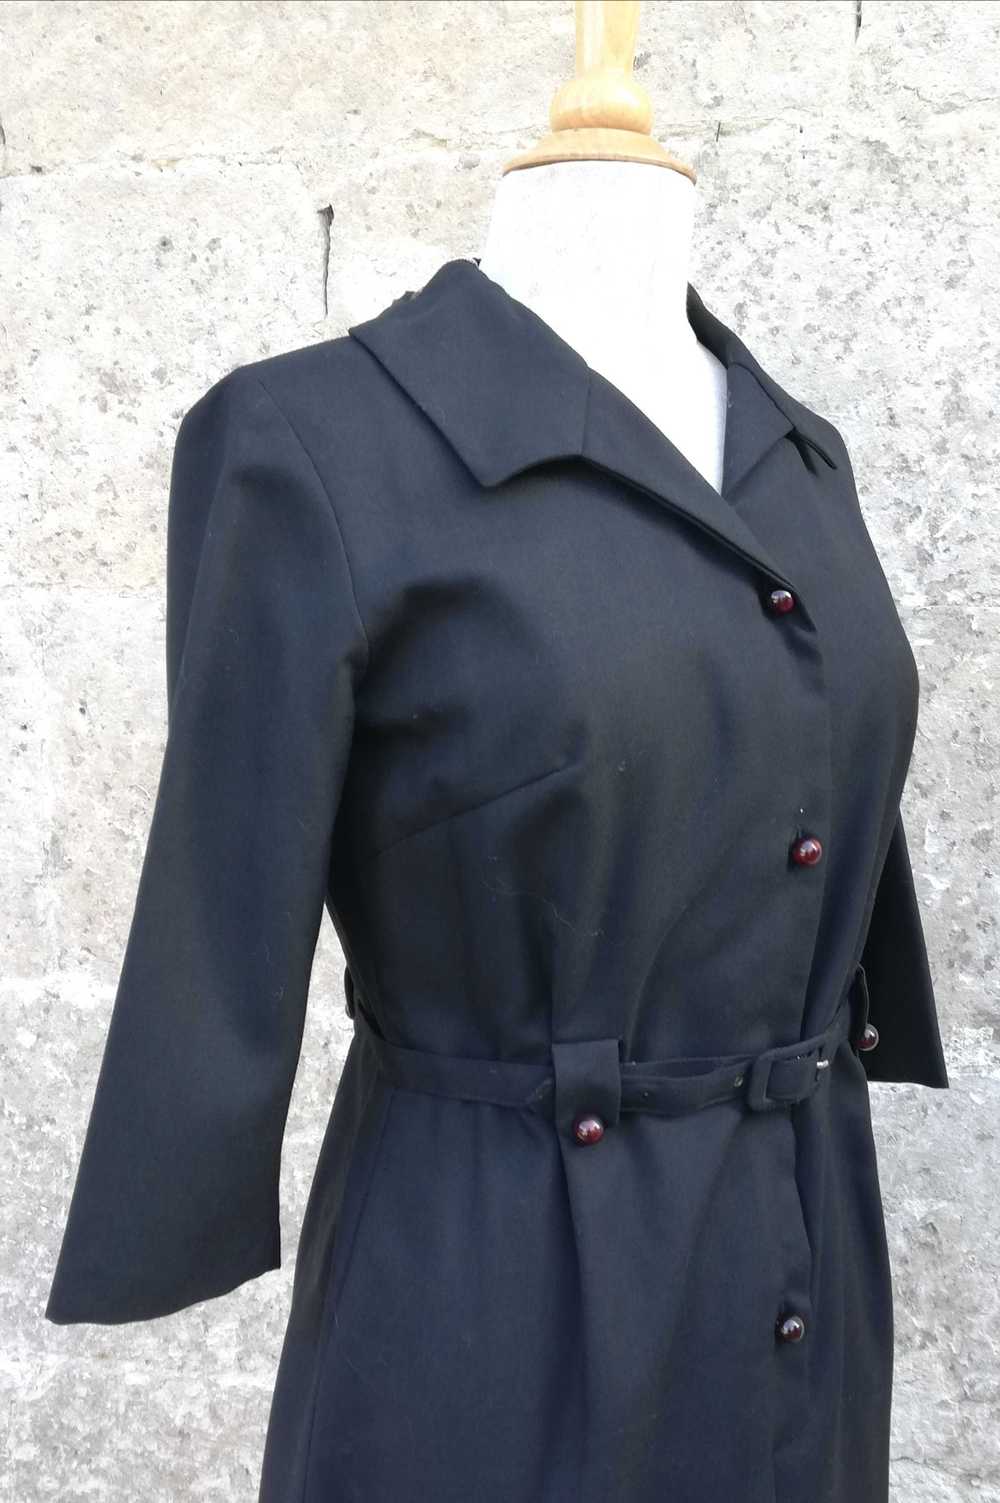 Cotton dress - Cotton dress, 50s black, never wor… - image 4